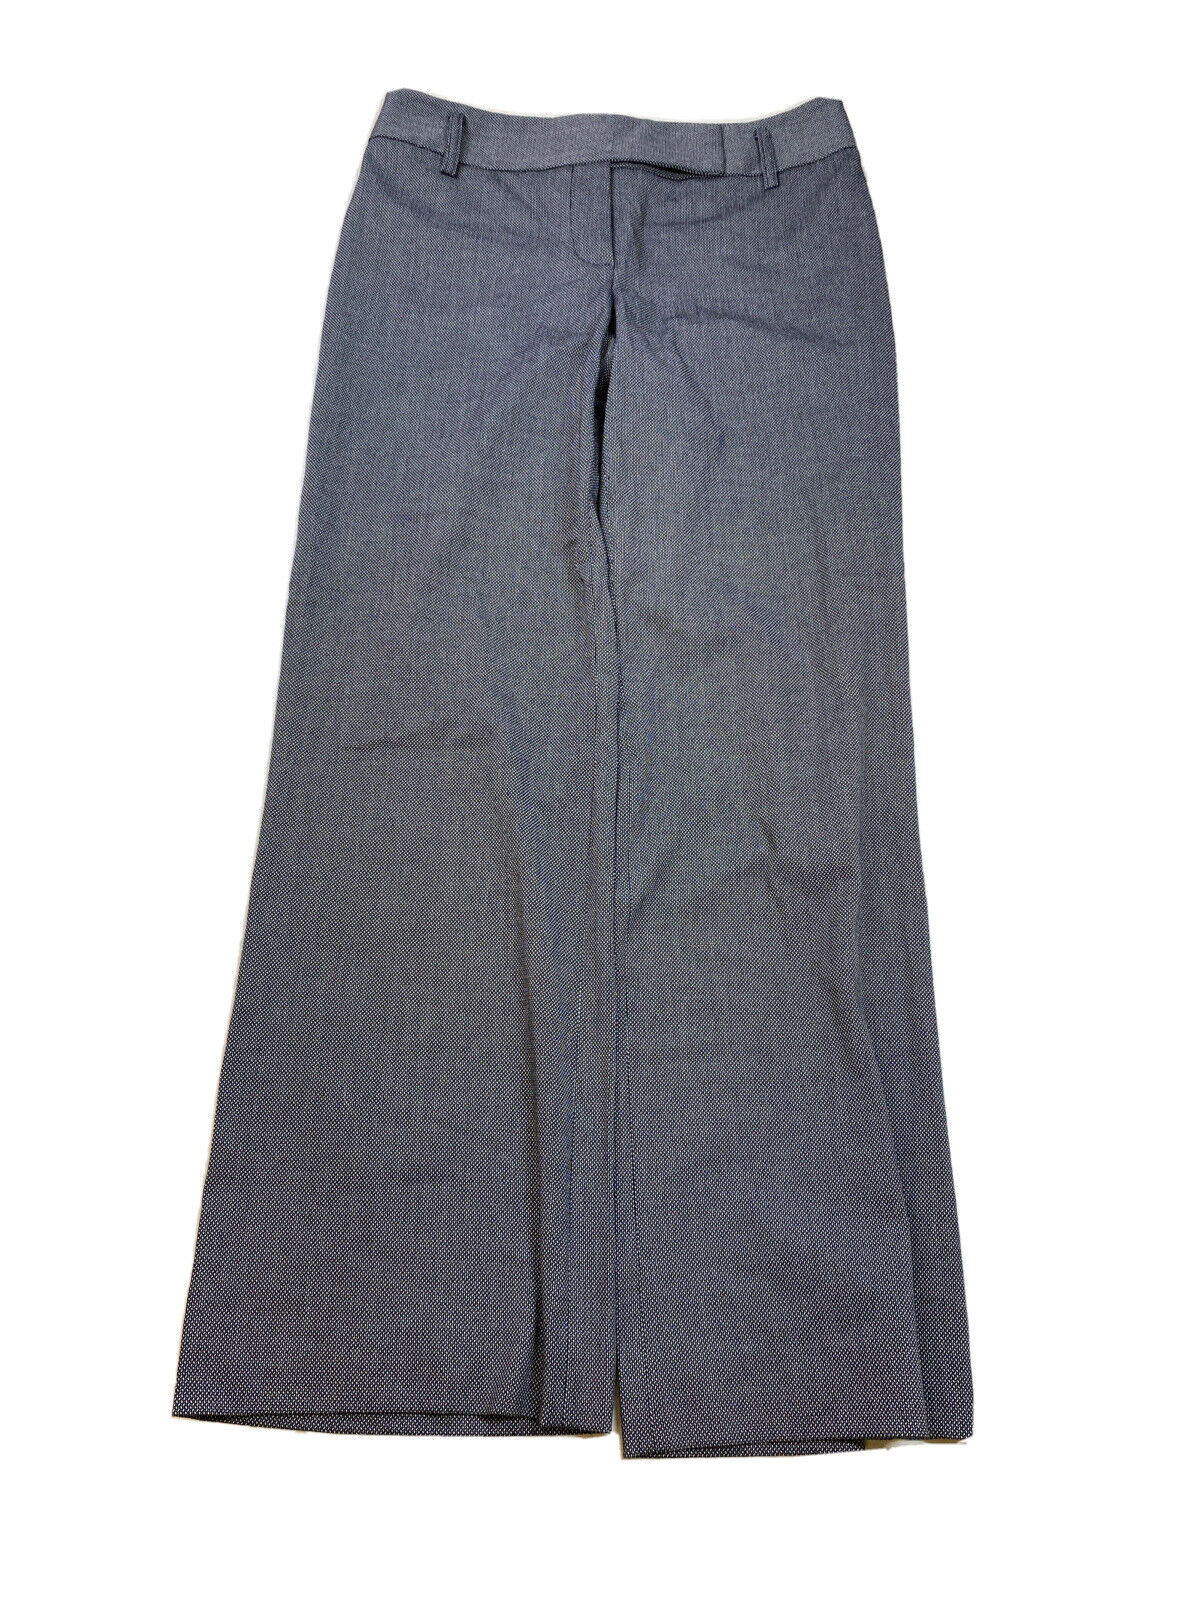 LOFT Women's Black Ann Bootcut Dress Pants - 2